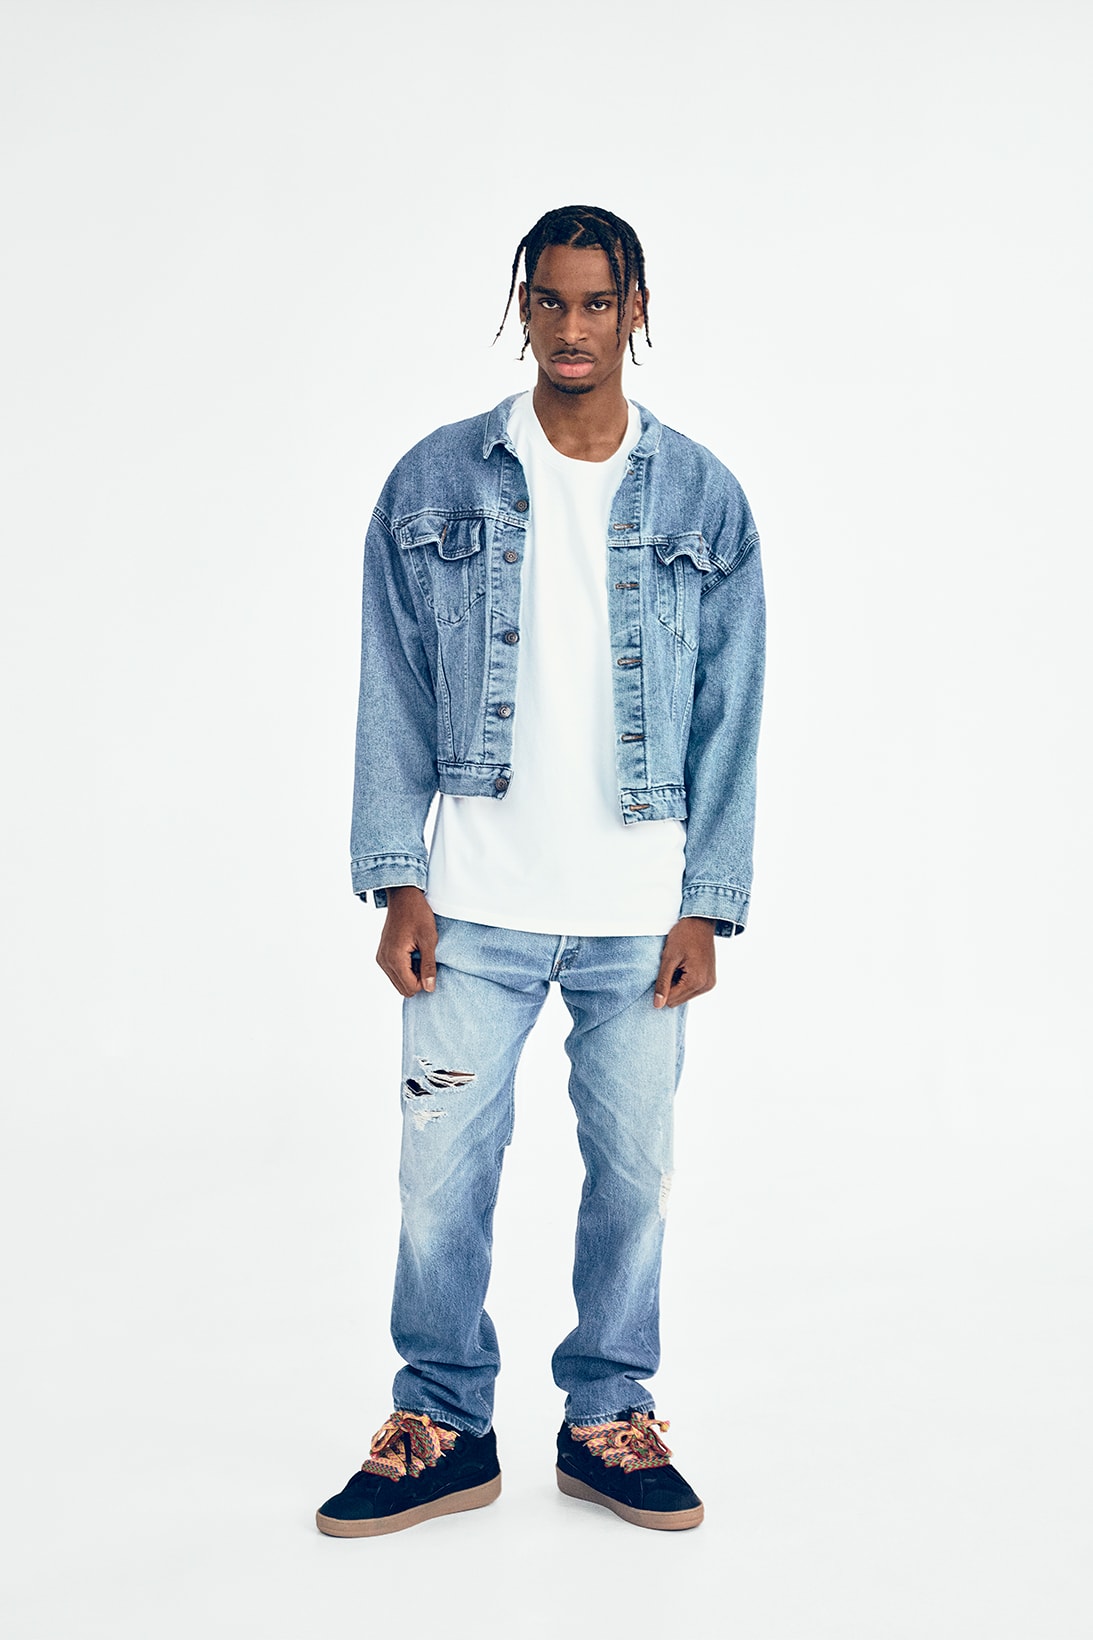 Levi's 501 Originals Jeans Campaign